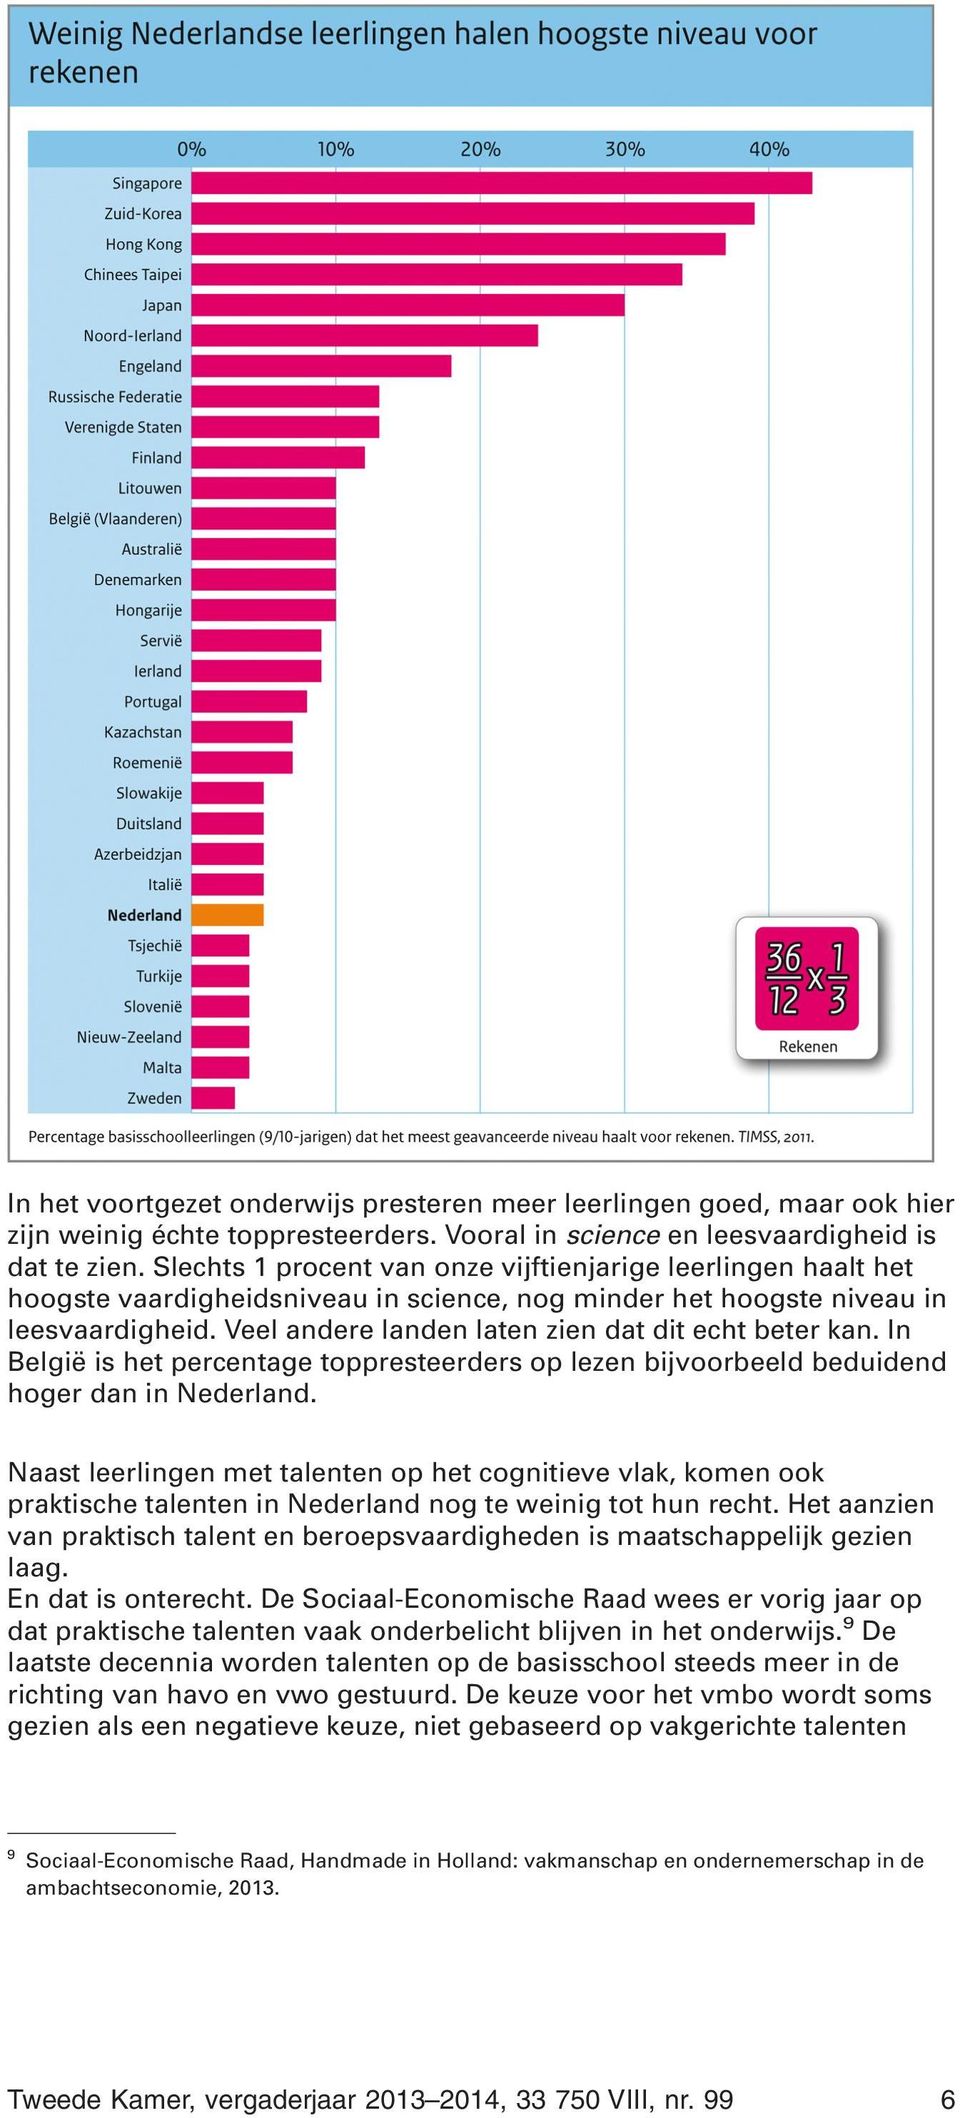 Veel andere landen laten zien dat dit echt beter kan. In België is het percentage toppresteerders op lezen bijvoorbeeld beduidend hoger dan in Nederland.